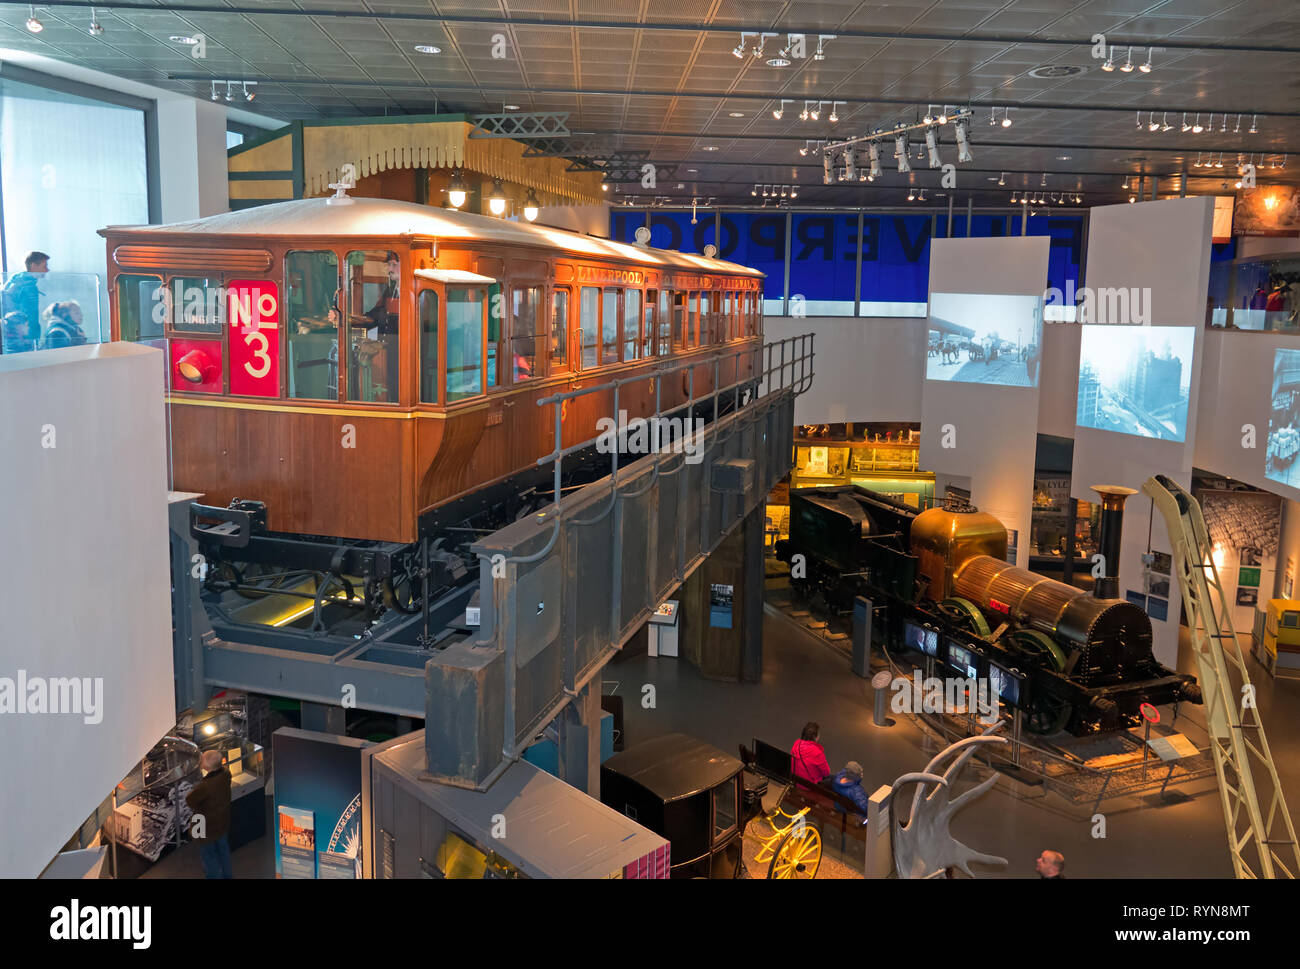 Liverpool linee aeree ferroviarie Motorcoach No.3 sul display all'interno del Museo di Liverpool Foto Stock